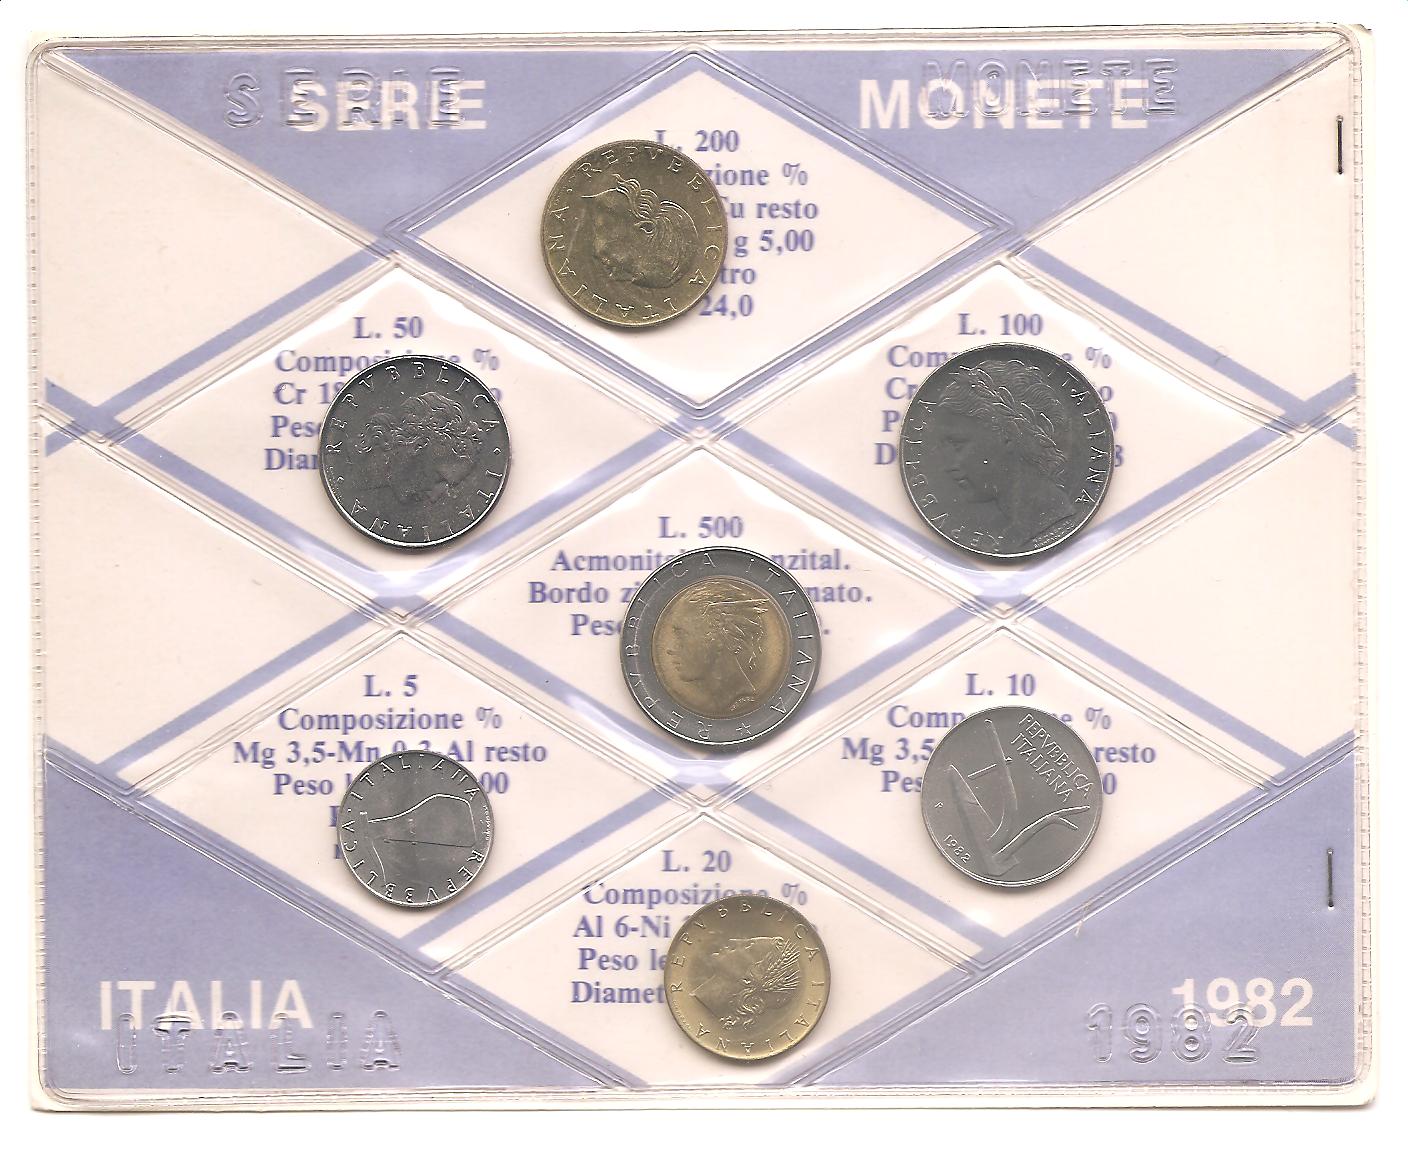 50525 - Italia - serie di monete a corso legale Fior di Conio in normale circolazione - 1982